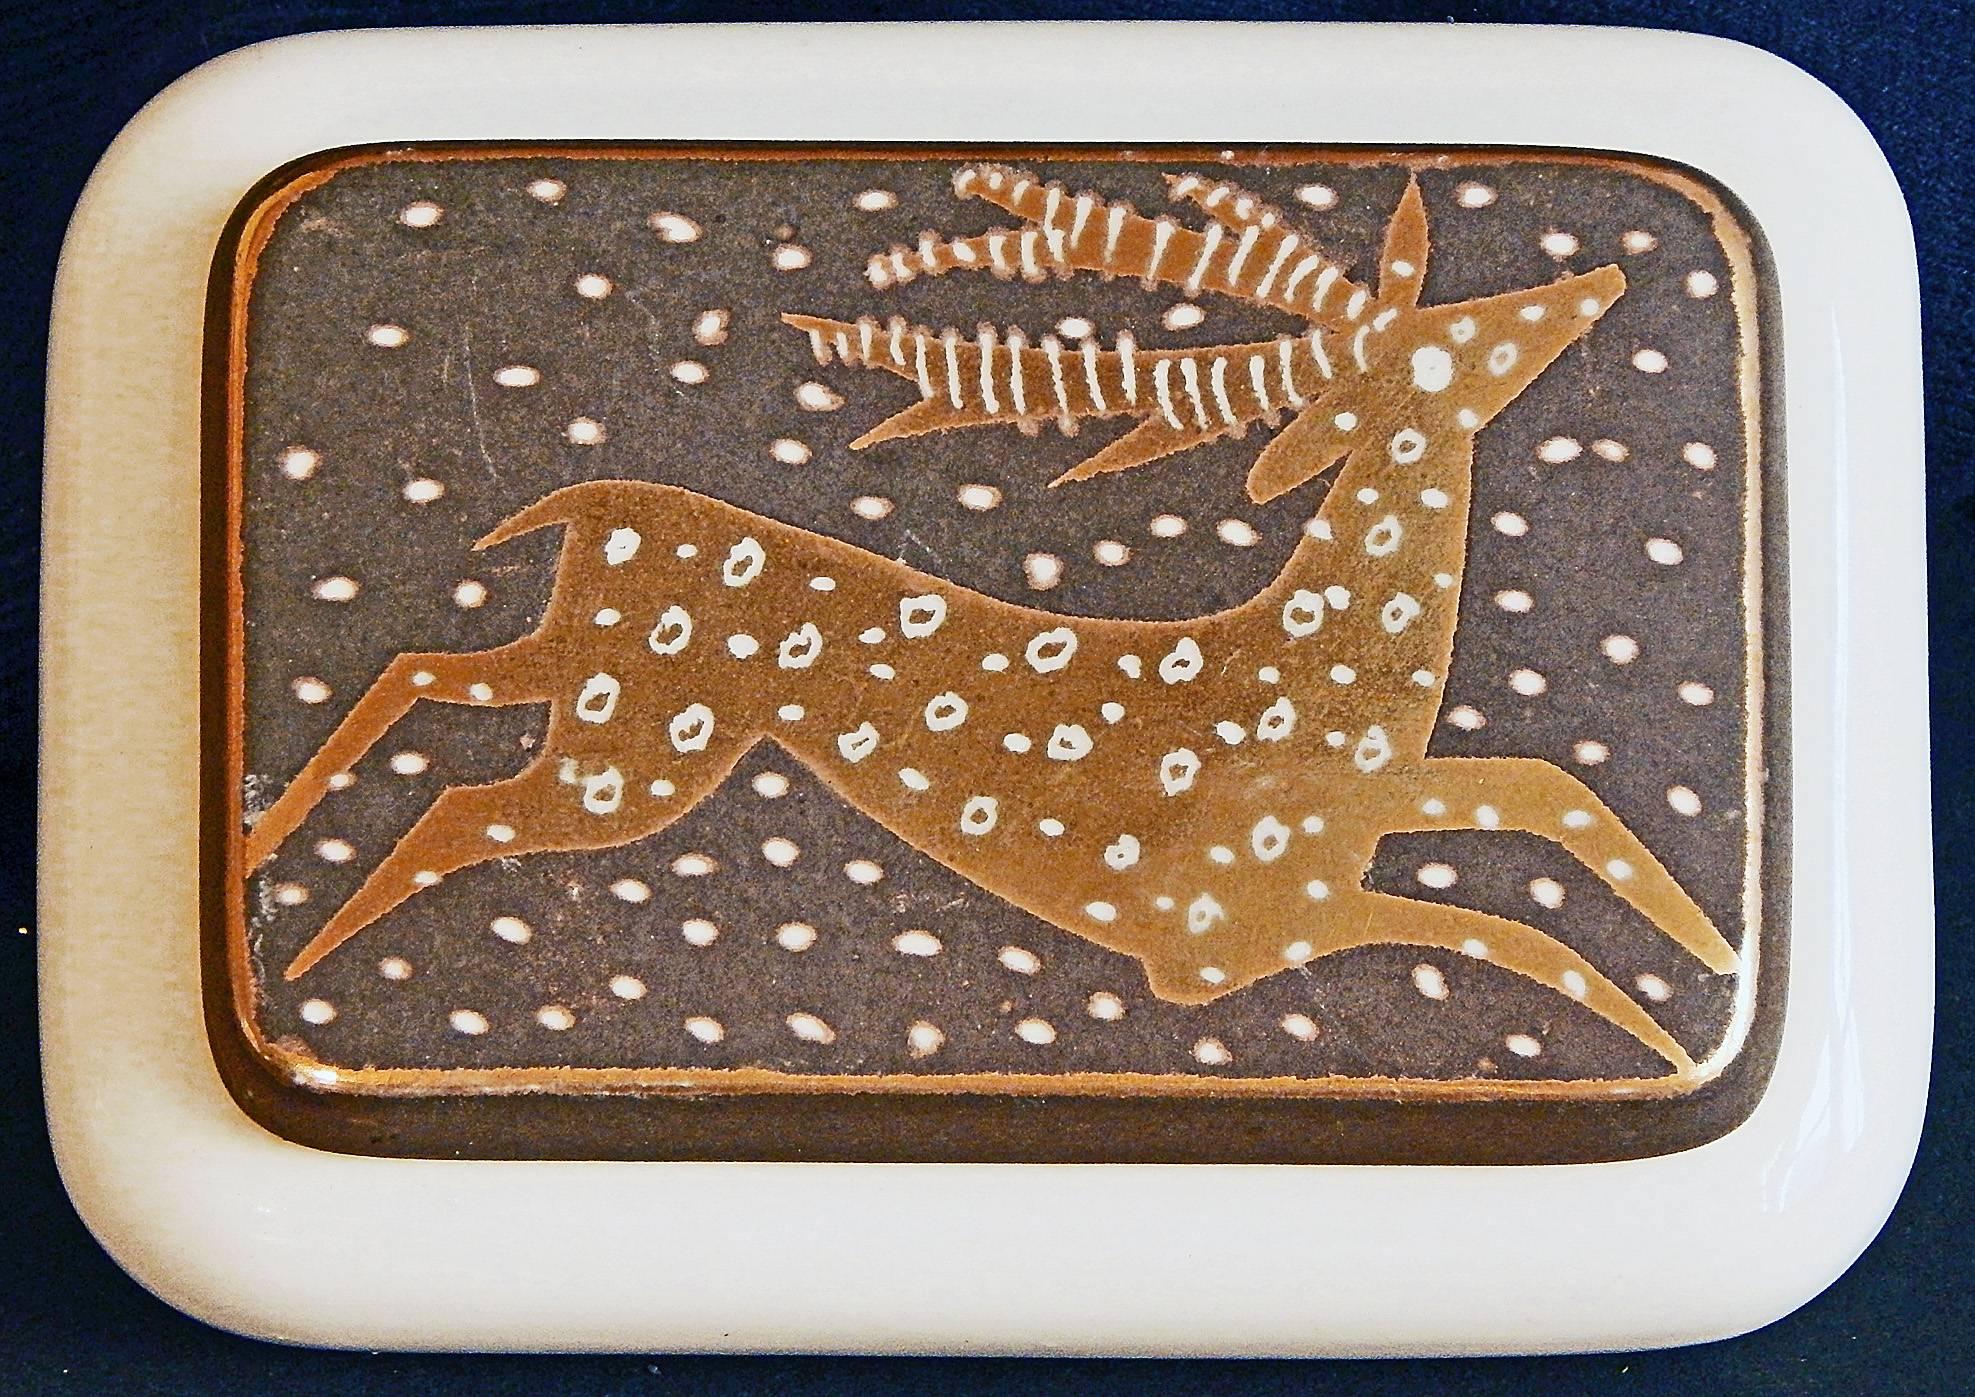 Magnifiquement émaillée dans des tons d'or et de gris foncé chaud, cette boîte en céramique à couvercle représente un cerf bondissant sur son couvercle, les taches sur sa fourrure faisant écho aux gros flocons de neige dans l'air. L'artiste,